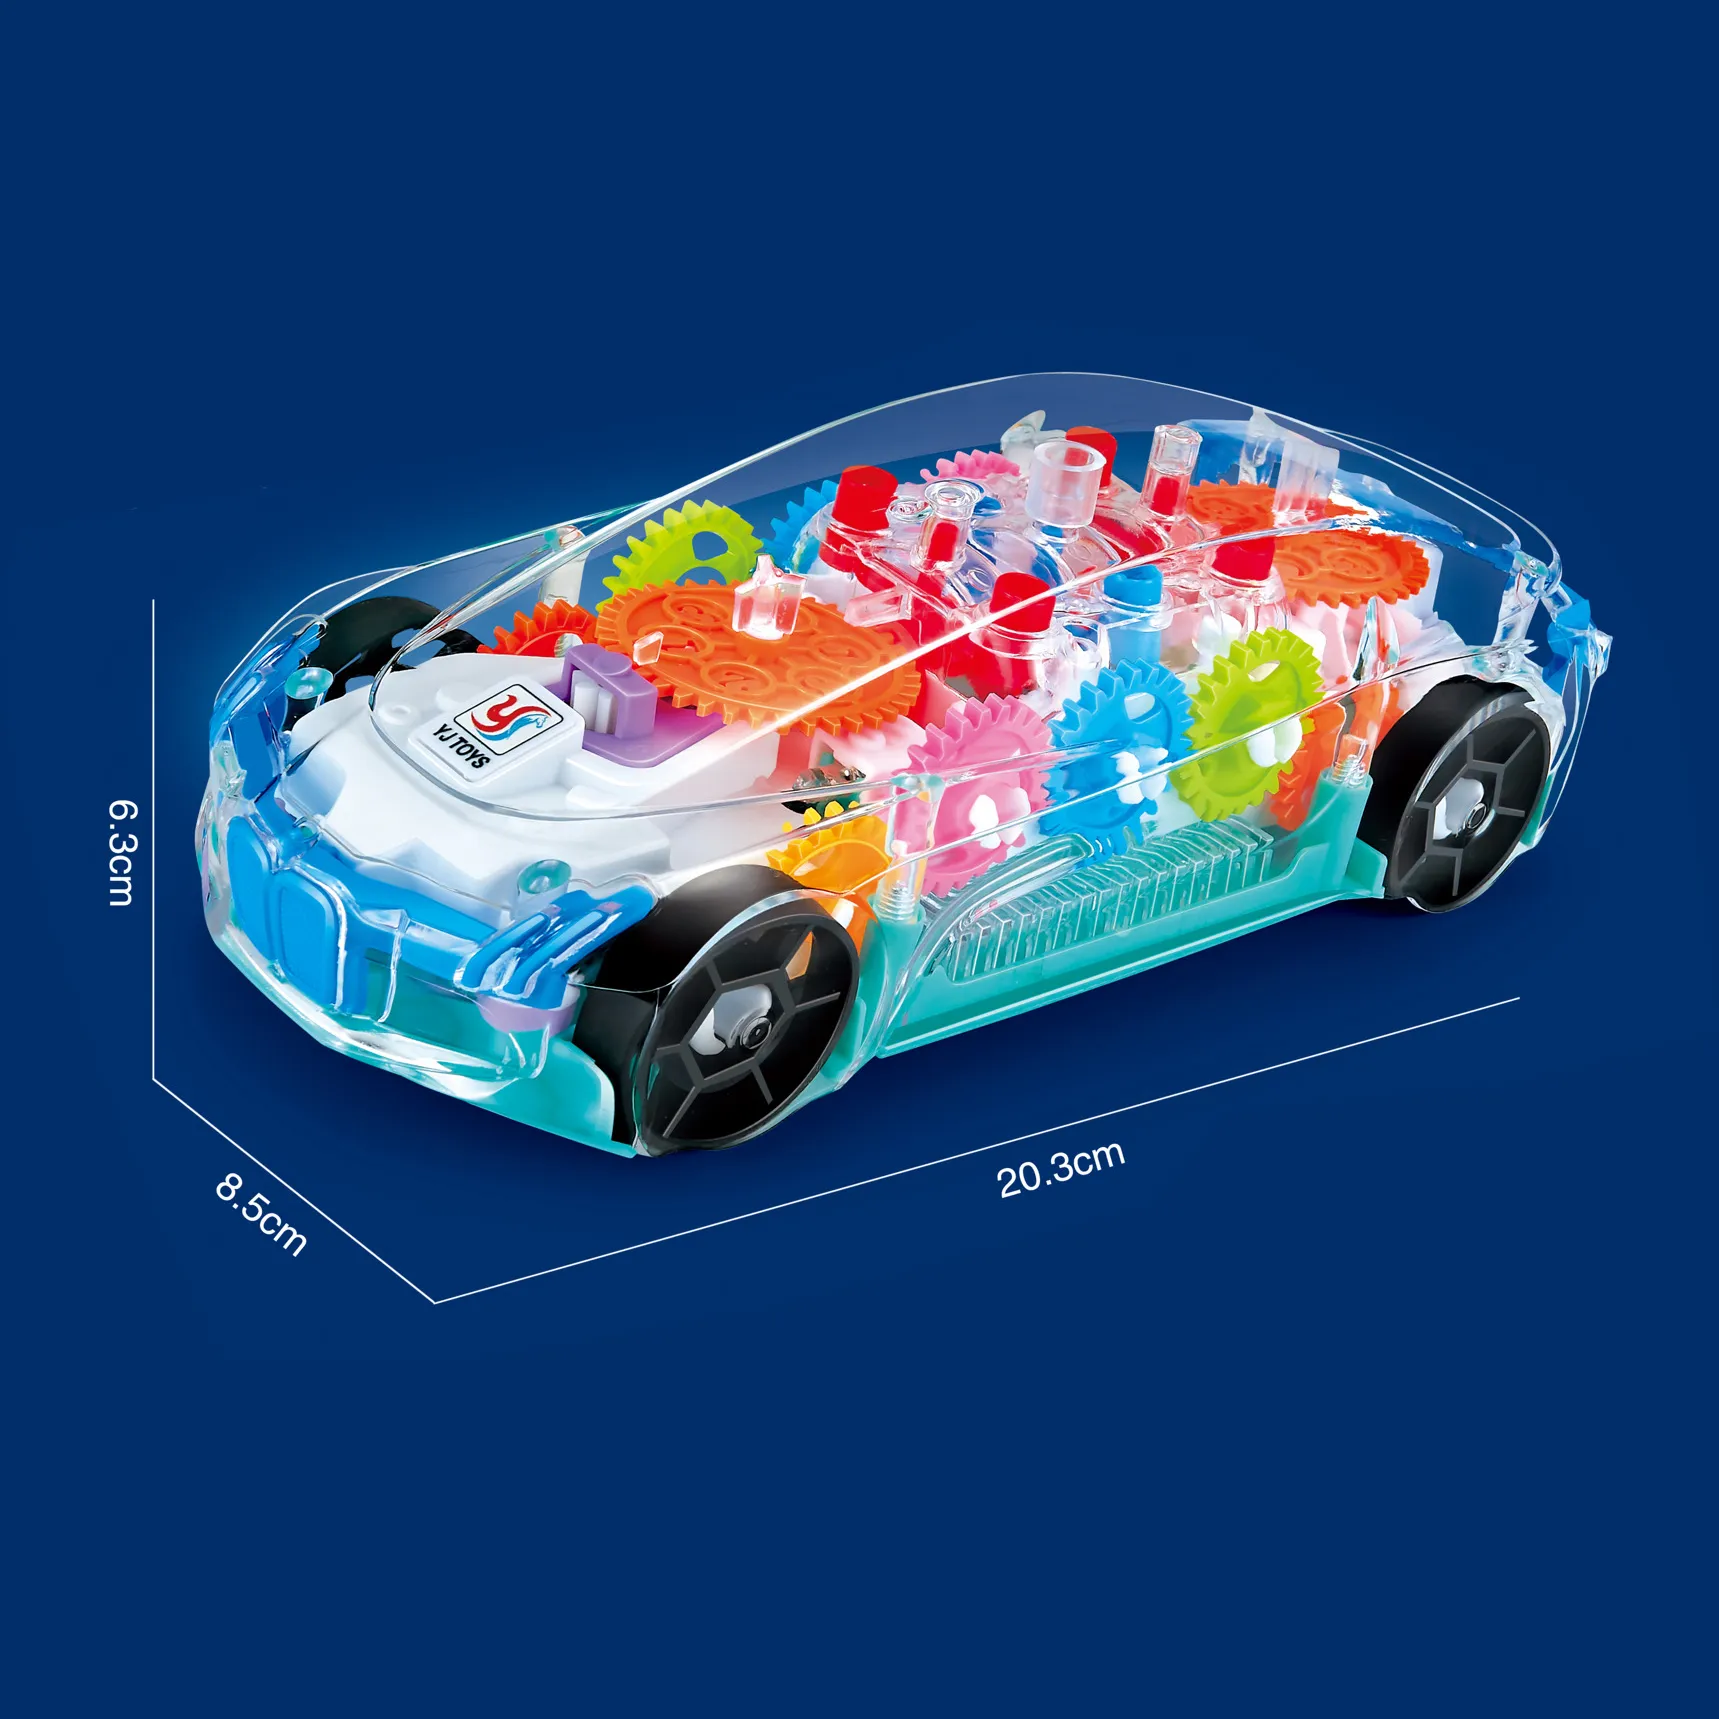 Elektrikli Şeffaf Oyuncak Araba Arabaları Görmek Mekanik Pil ile çalışan Yarış Aracı Oyuncaklar Görünür Renkli Hareketli Dişliler Parlak LED Işık Efektleri Müzik